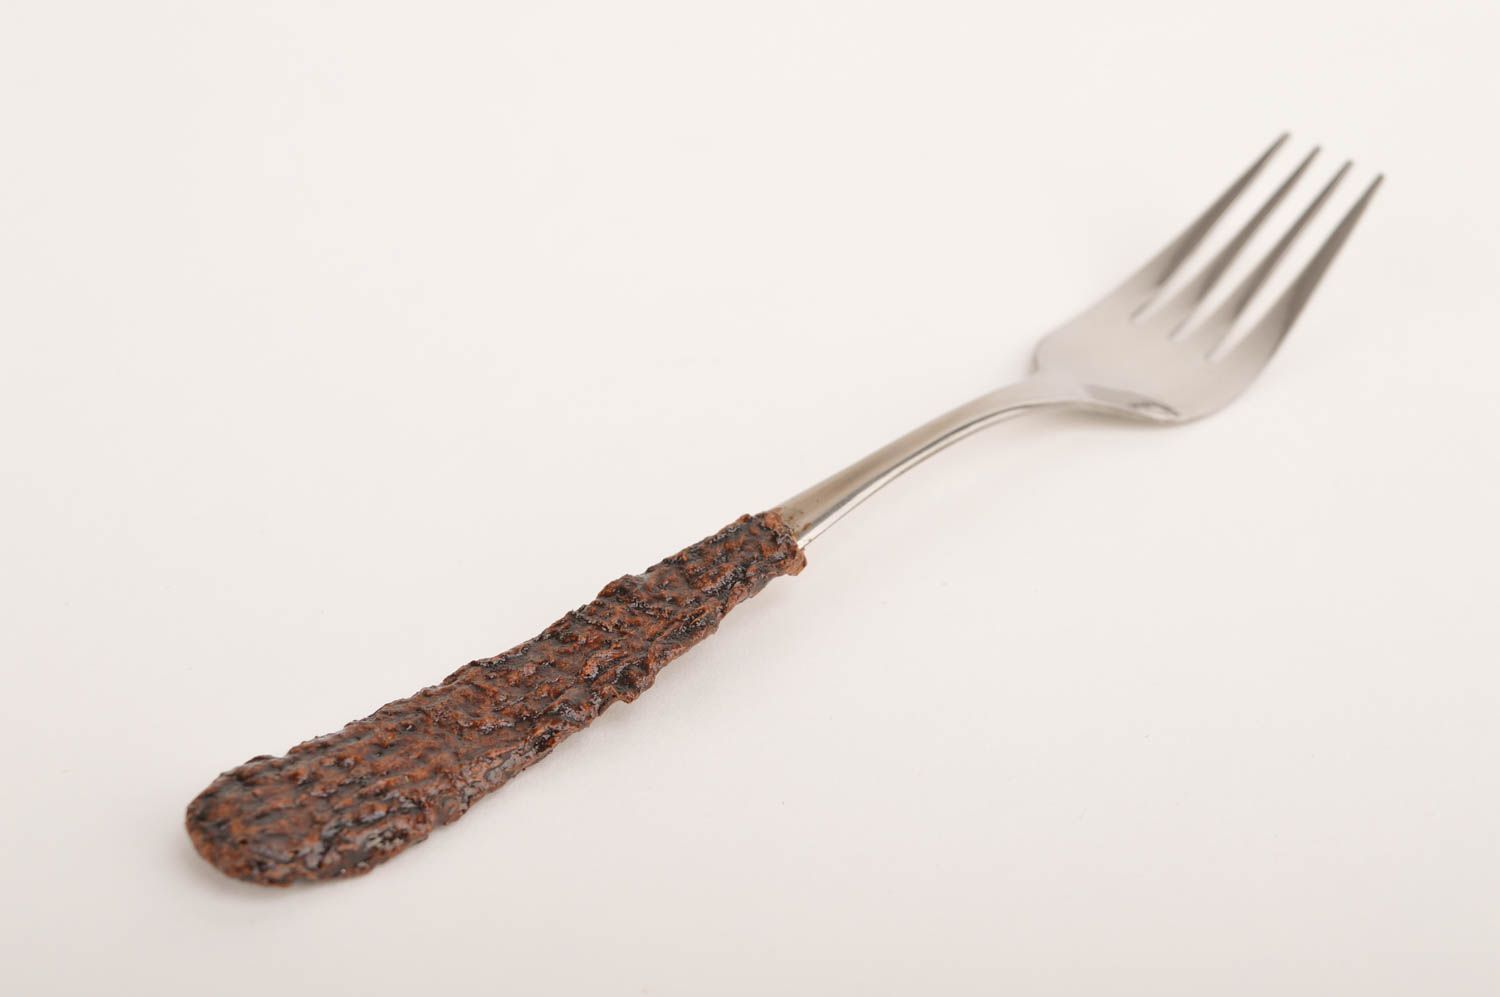 Handmade fork designer spork metal cutlery designer kitchen utensils gift ideas photo 3